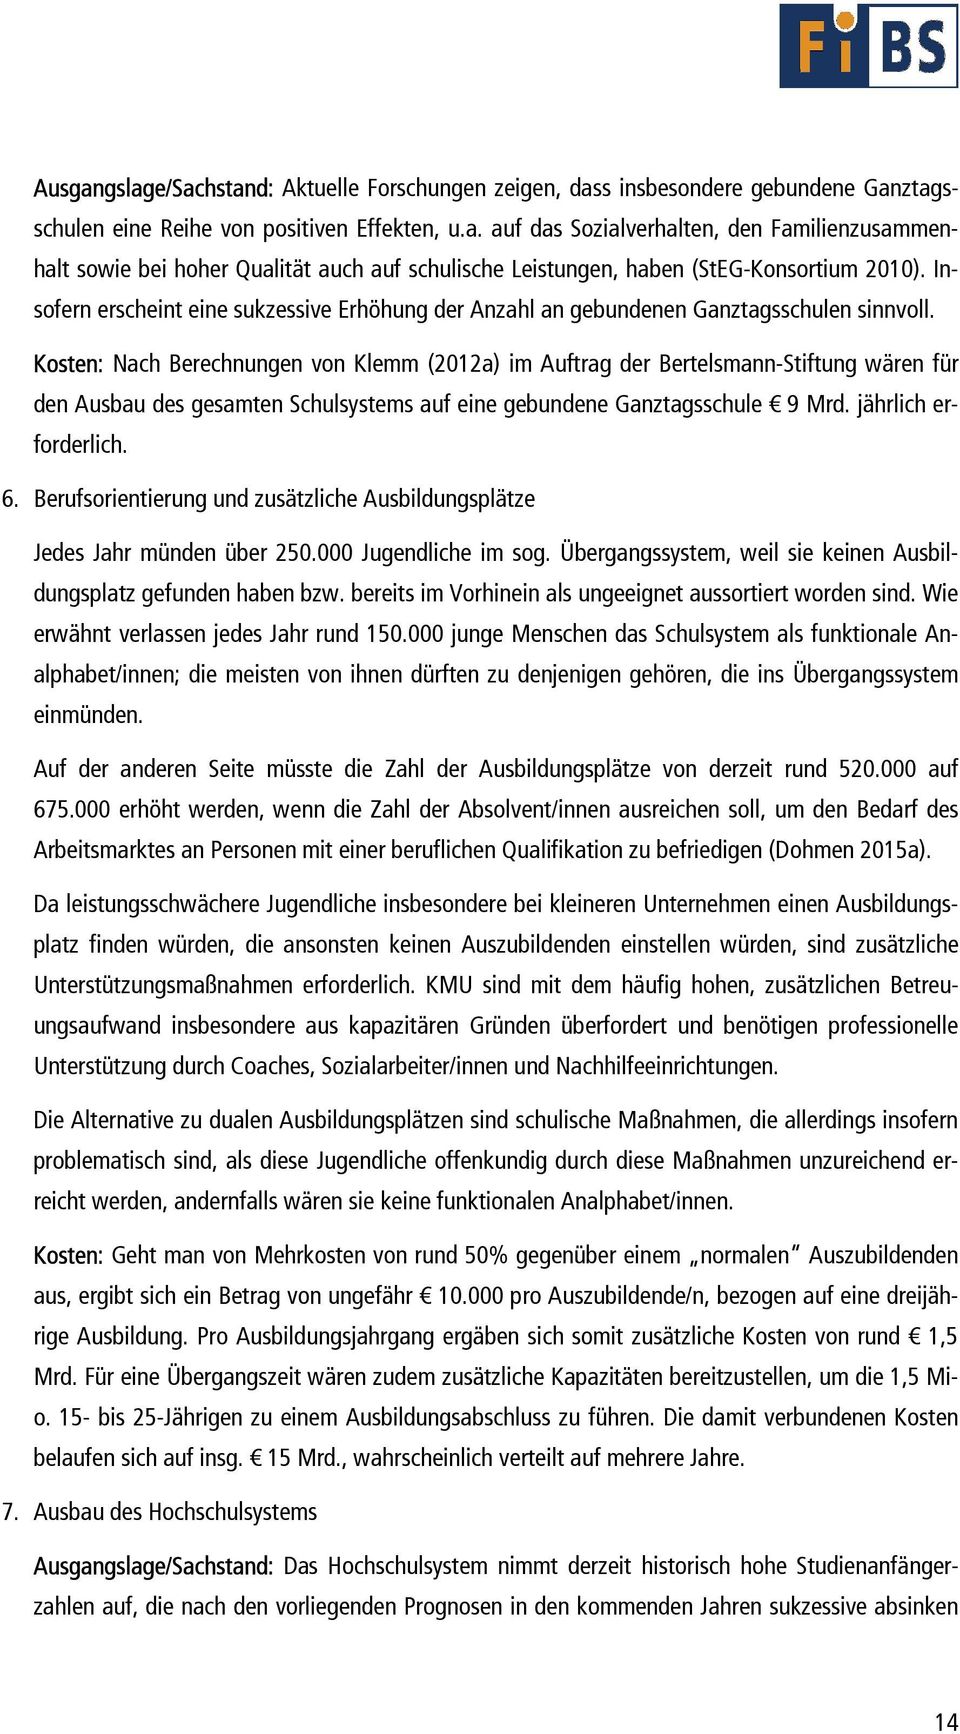 Kosten: Nach Berechnungen von Klemm (2012a) im Auftrag der Bertelsmann-Stiftung wären für den Ausbau des gesamten Schulsystems auf eine gebundene Ganztagsschule 9 Mrd. jährlich erforderlich. 6.